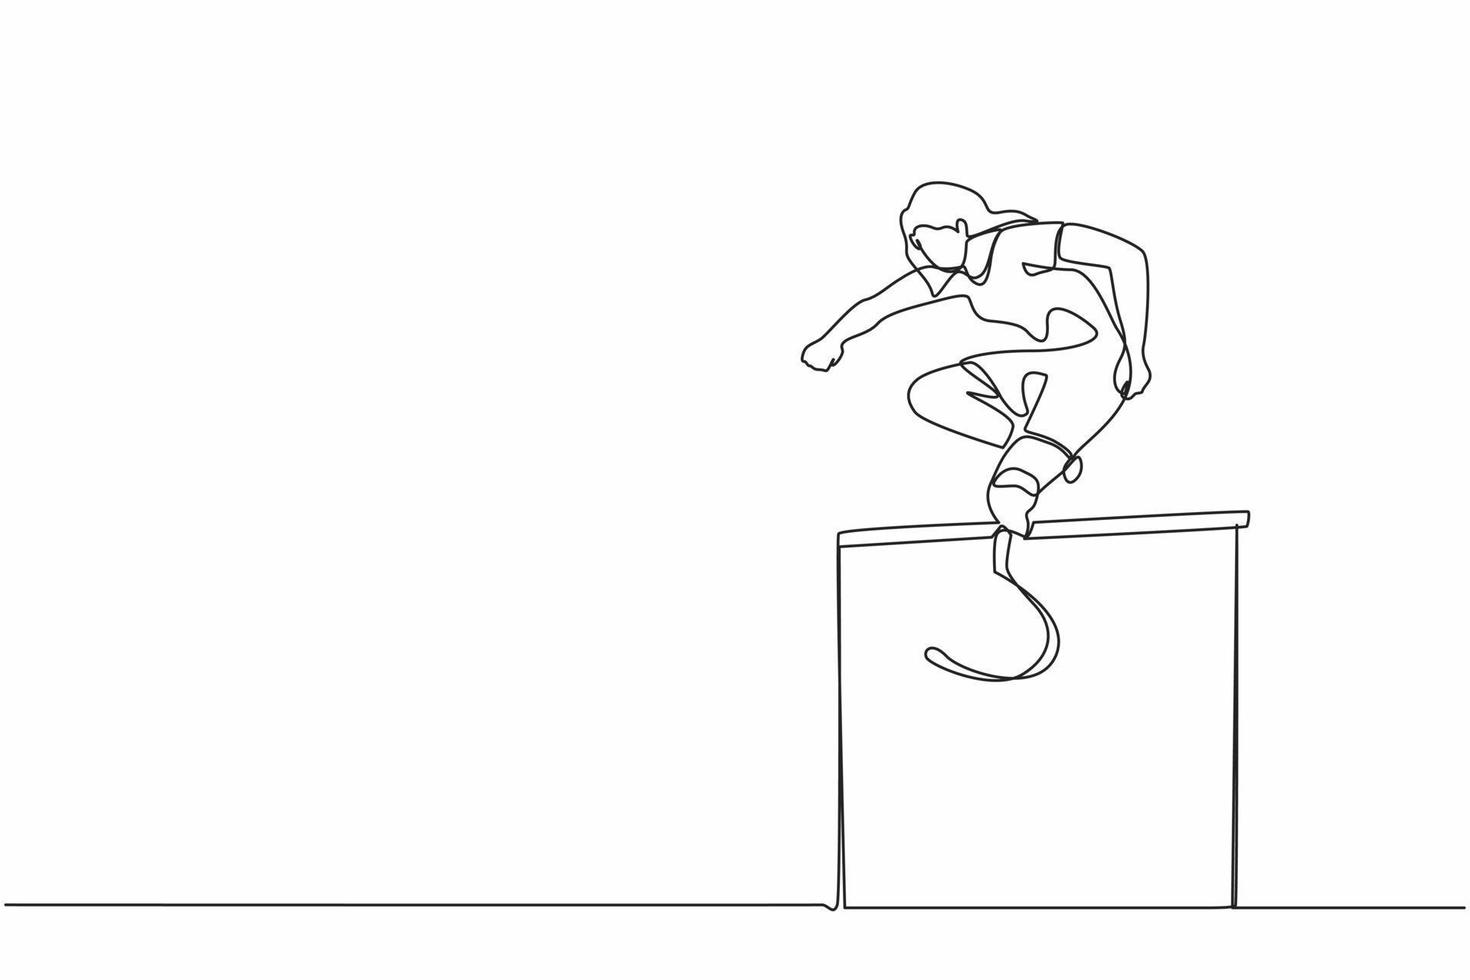 dessin d'une seule ligne amputée jeune athlète féminine sautant, courant sur l'obstacle. jeux pour handicapés avec course d'obstacles. concept de sport handicapé. illustration vectorielle graphique de conception de dessin en ligne continue vecteur